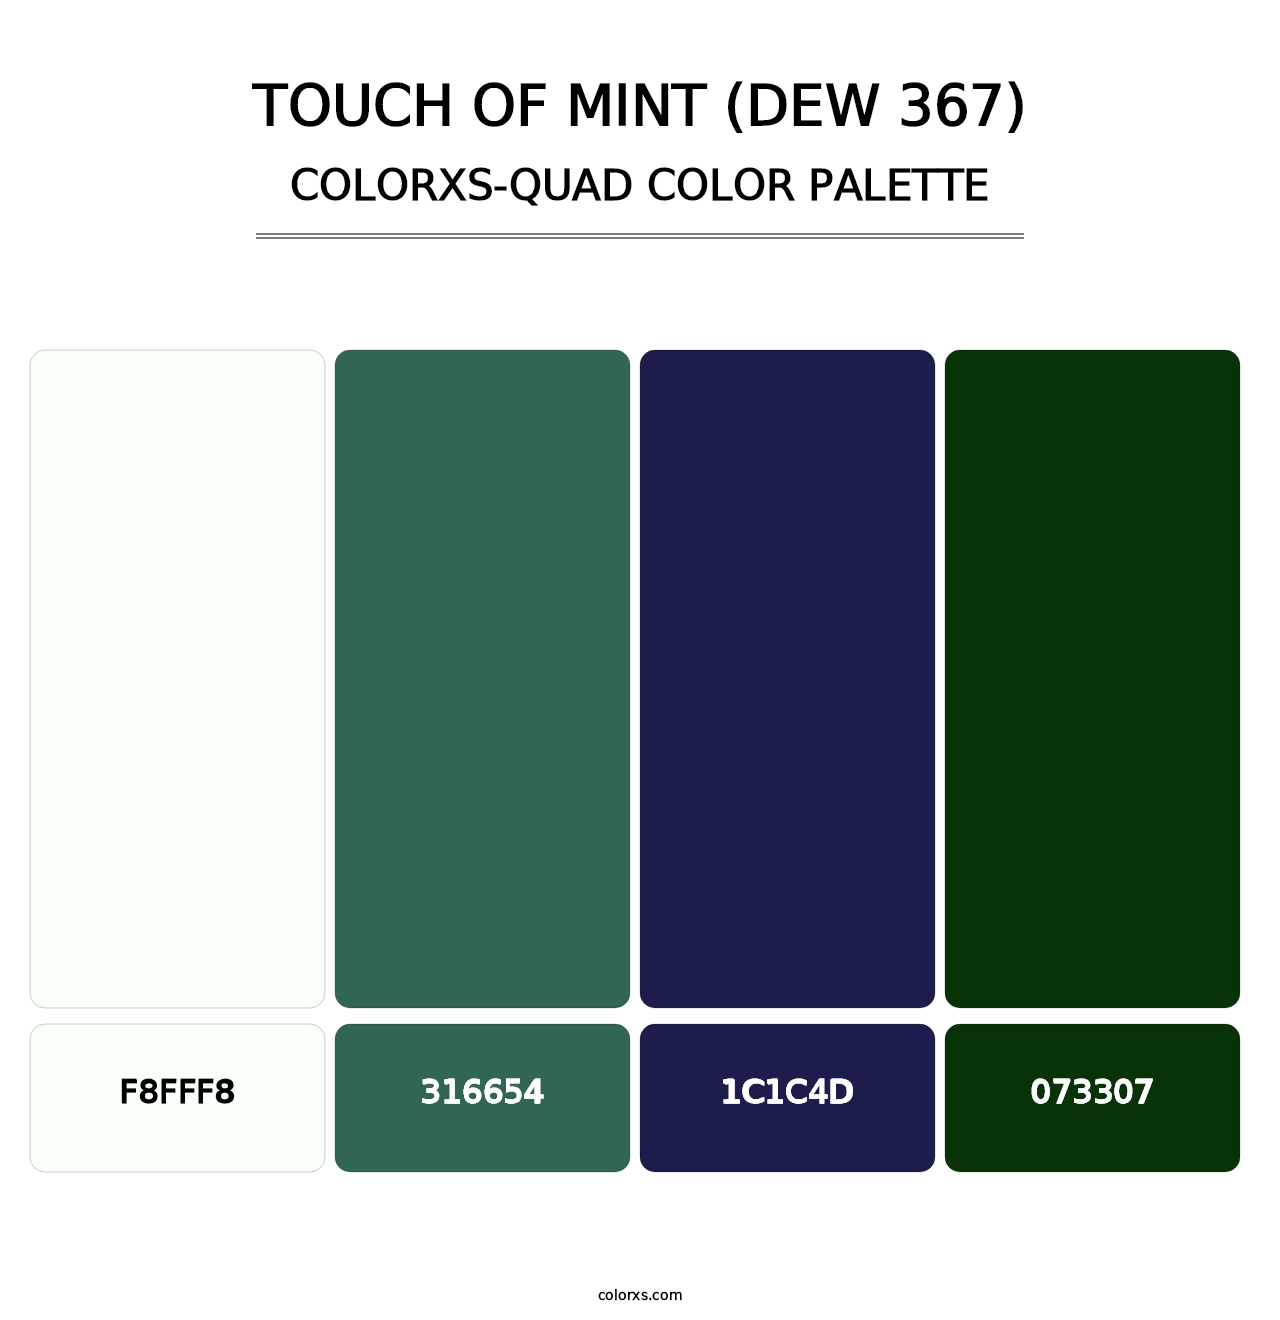 Touch of Mint (DEW 367) - Colorxs Quad Palette